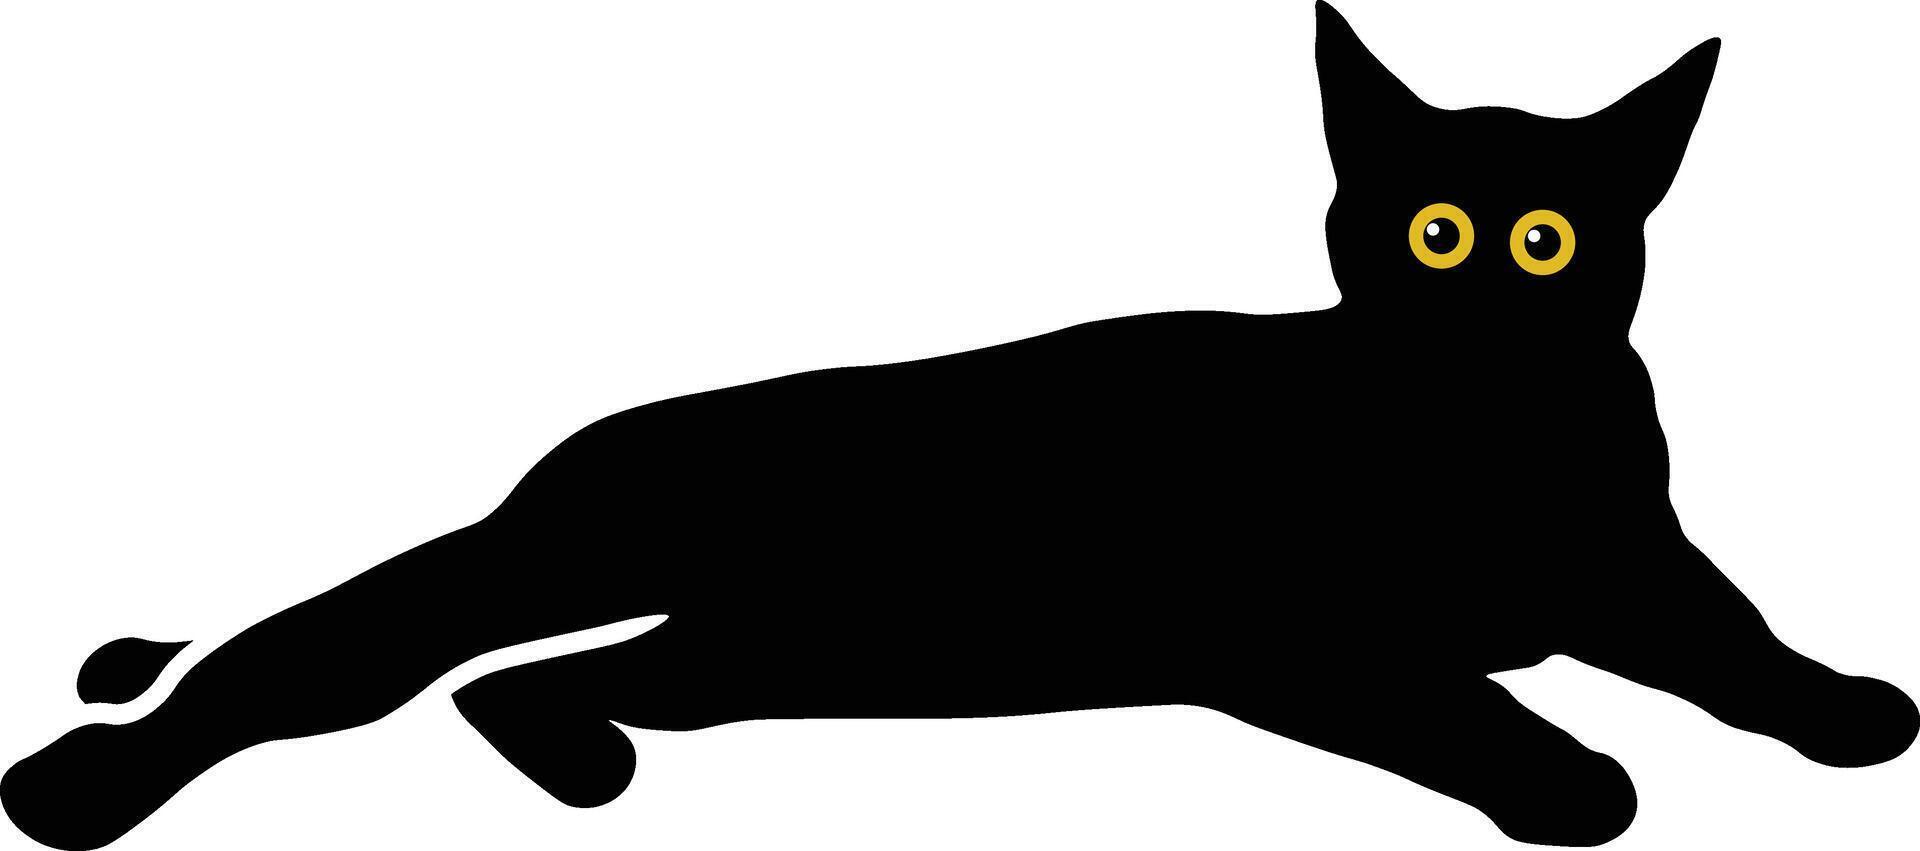 internazionale gatto giorno personaggio con carino giallo occhi. isolato nero silhouette vettore